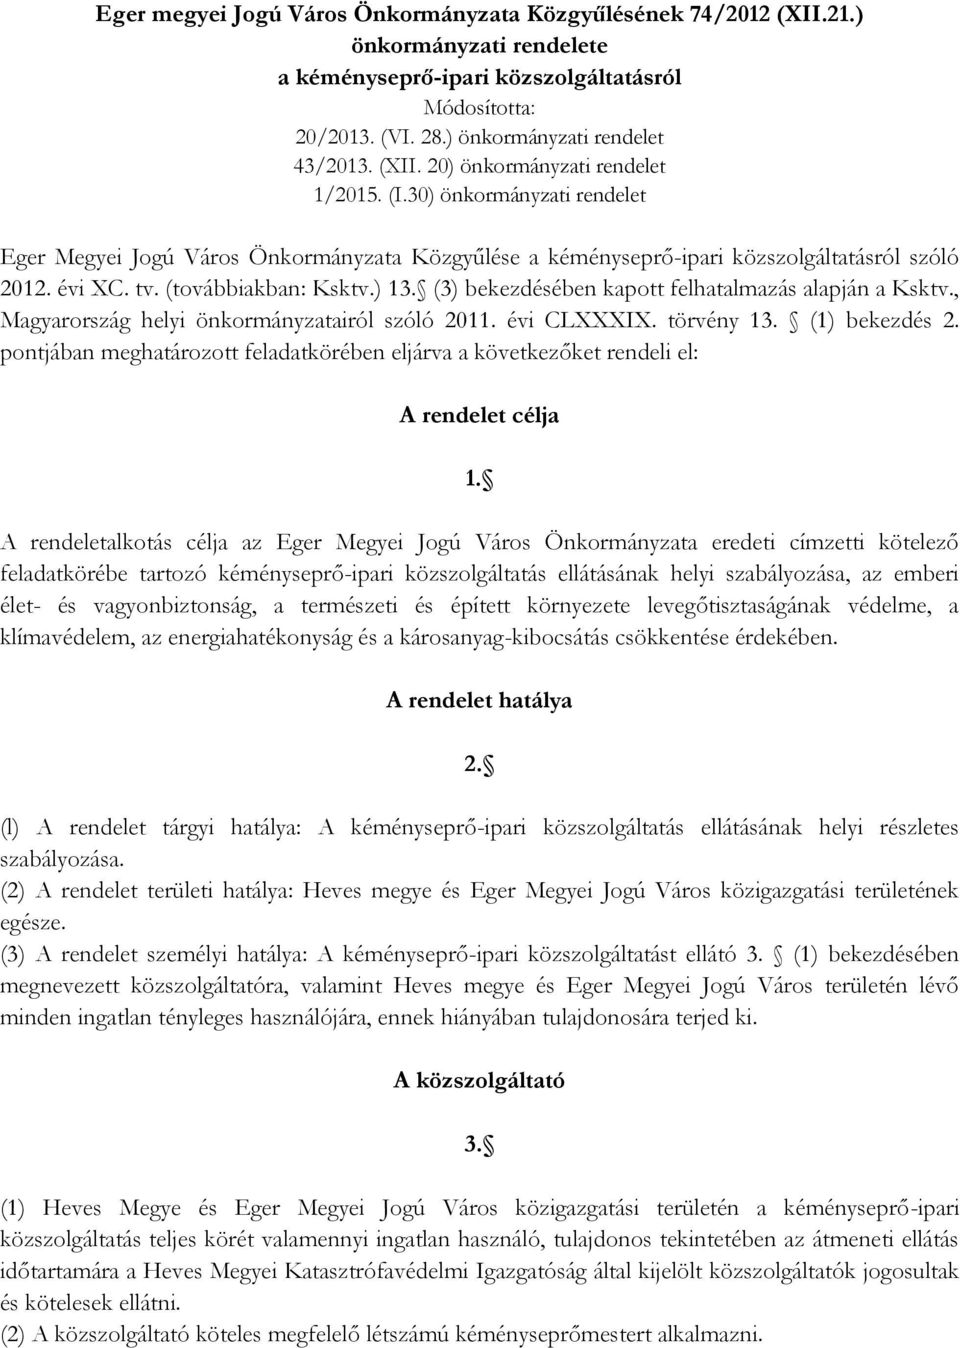 (továbbiakban: Ksktv.) 13. (3) bekezdésében kapott felhatalmazás alapján a Ksktv., Magyarország helyi önkormányzatairól szóló 2011. évi CLXXXIX. törvény 13. (1) bekezdés 2.